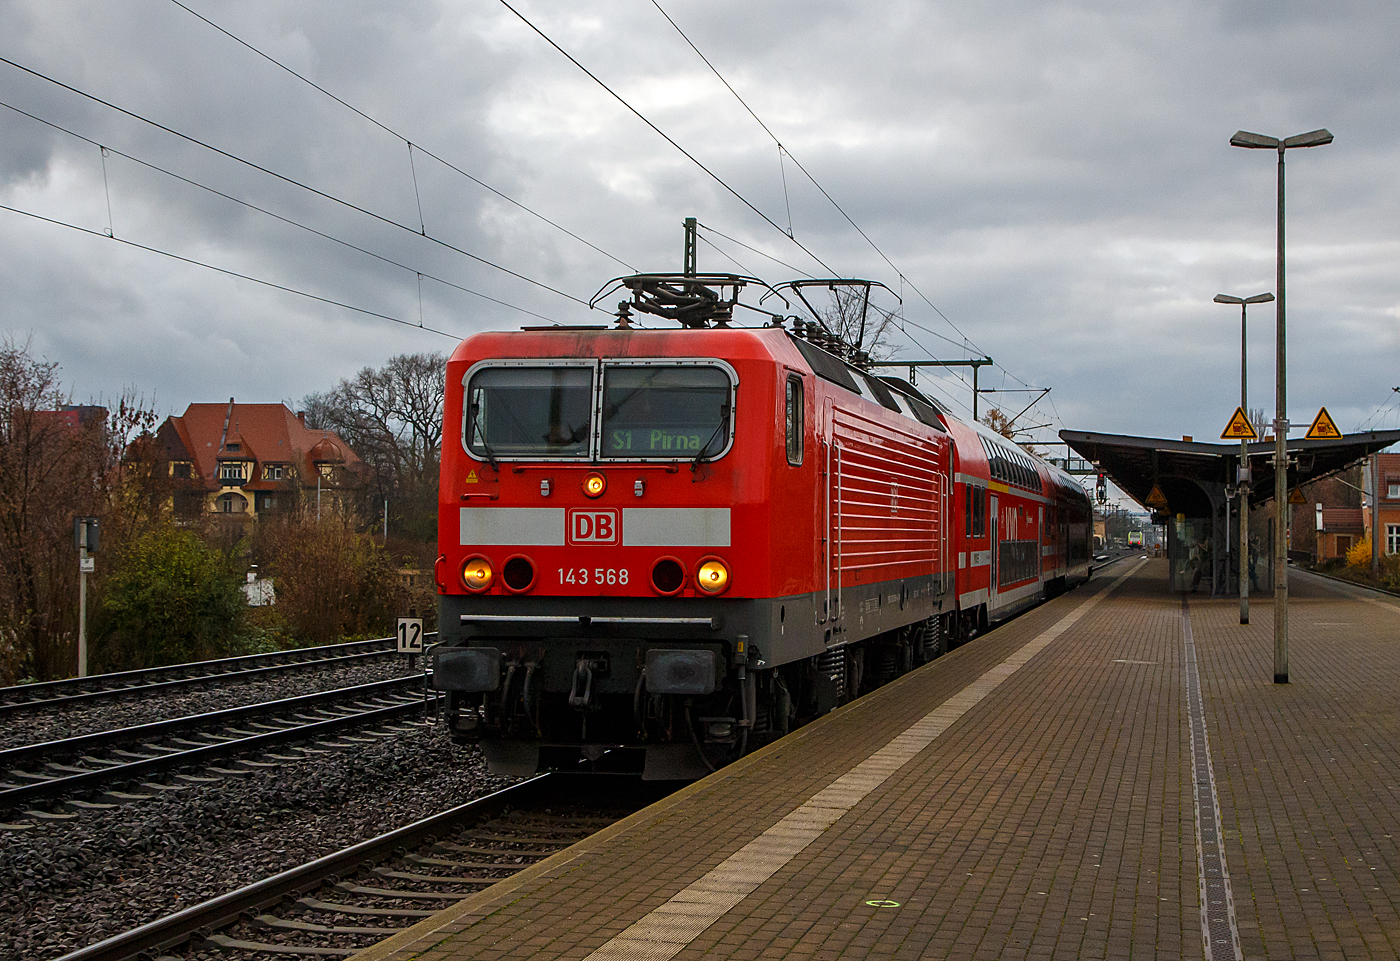 Früher war sie an Rhein und Mosel unterwegs, wo ich sie selbst schon ablichten konnte, nun ist sie an der Elbe....
Die 143 568-4 (91 80 6143 568-4 D-DB) der DB Regio AG Südost (S-Bahn Dresden) fährt am 07.12.2022 mit einem kurzen DoSto-Zug (2 Wagen) als S1 von Dresden-Strehlen weiter in Richtung Pirna. 

Die Lok wurde 1990 bei LEW (Lokomotivbau Elektrotechnische Werke Hans Beimler Hennigsdorf) unter der Fabriknummer 18575 gebaut und als DR 243 568-3 an die Deutsche Reichsbahn geliefert. Da sie bereits 1991 an die DB vermietet wurde, erfolgte auch 1991 die Umzeichnung in 143 568-4.
